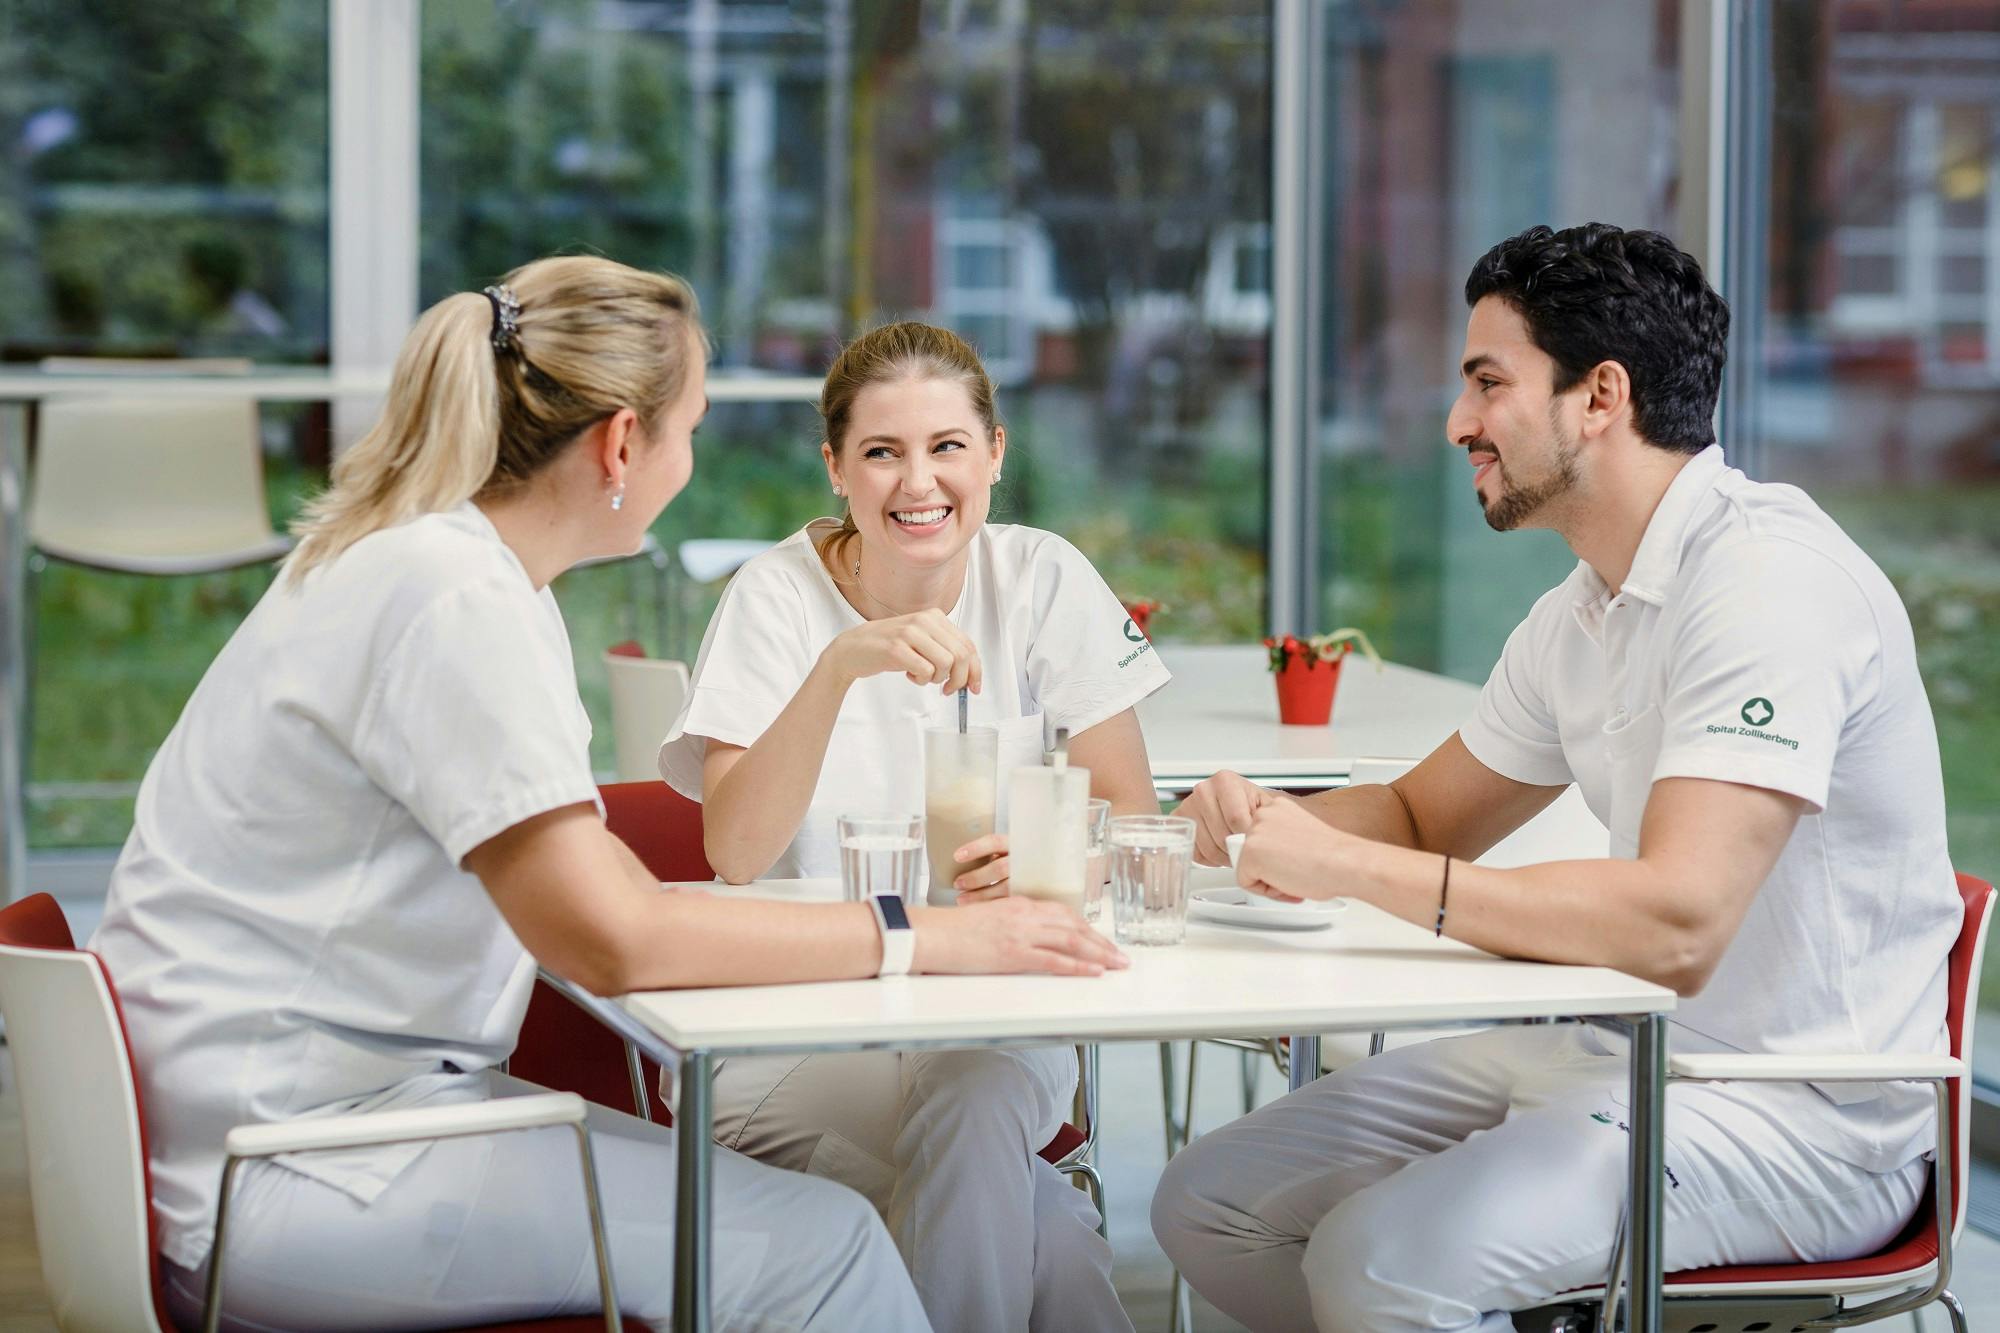 Drei lächelnde Mediziner in weißer Uniform sitzen an einem Tisch im Pausenraum.